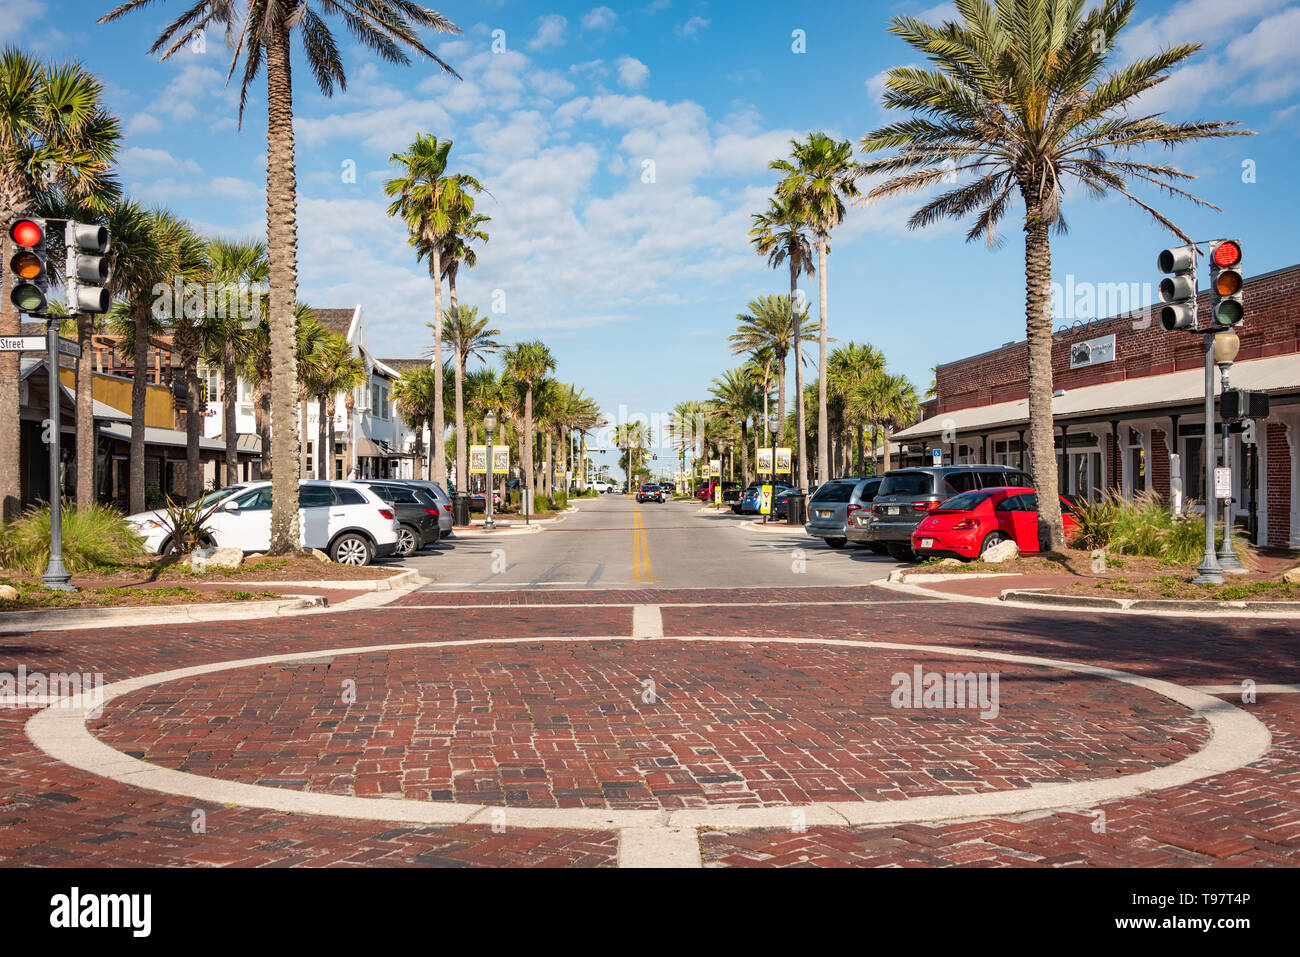 Città di spiaggia ristoranti locali la linea Street tra la Florida A1A e Ocean Boulevard presso la linea di demarcazione tra Atlantic Beach e Nettuno Beach, FL. Foto Stock